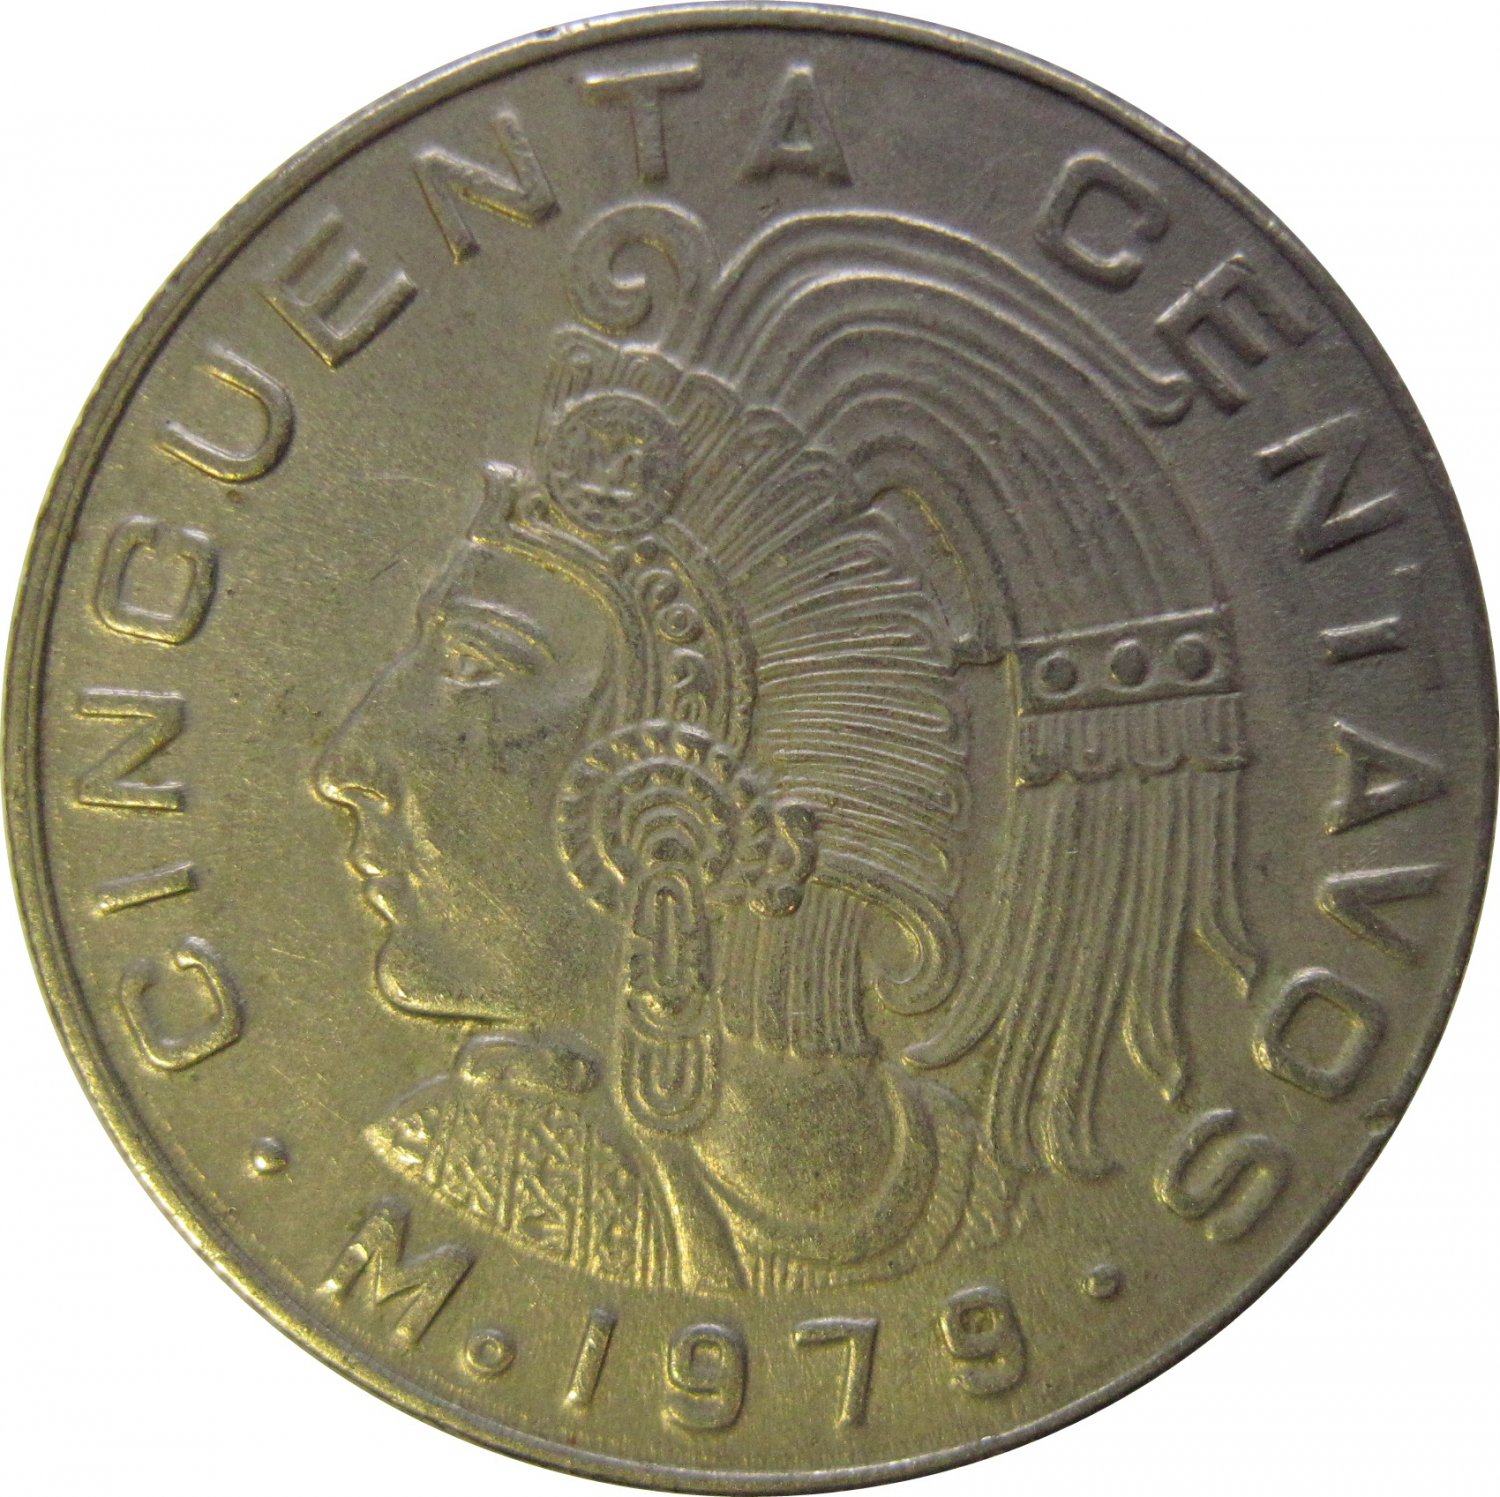 1979 Mexico 50 Centavos